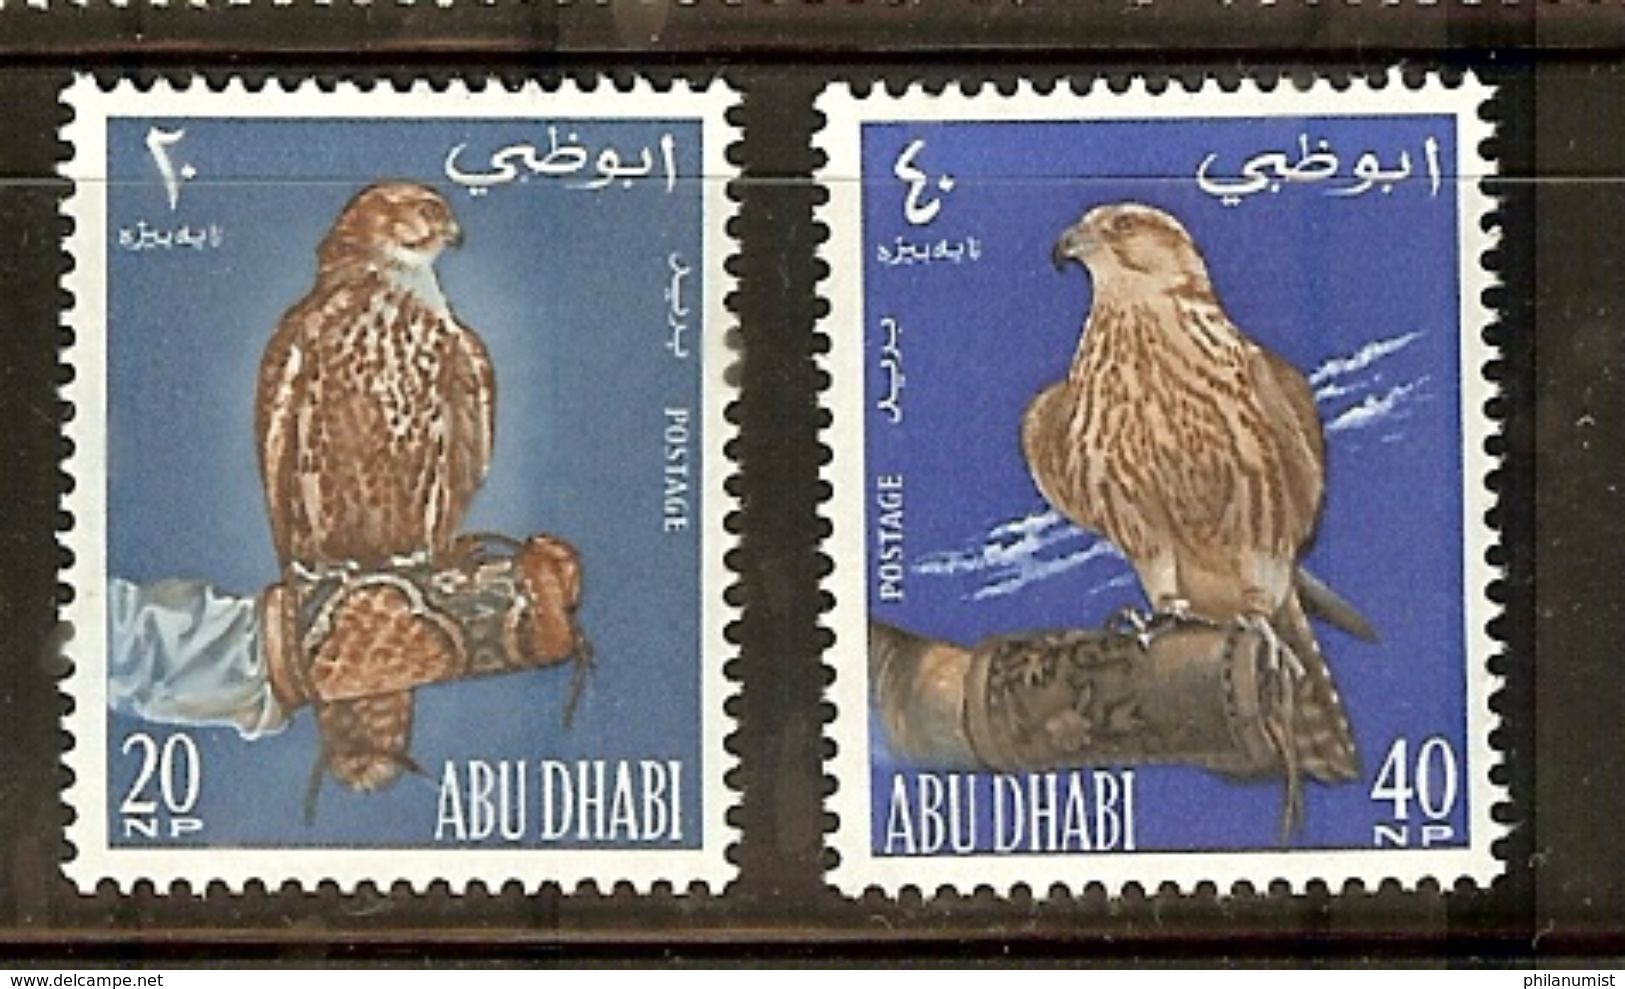 ABU DHABI BIRDS FALCON 2v 1965 MNH !! - Eagles & Birds Of Prey